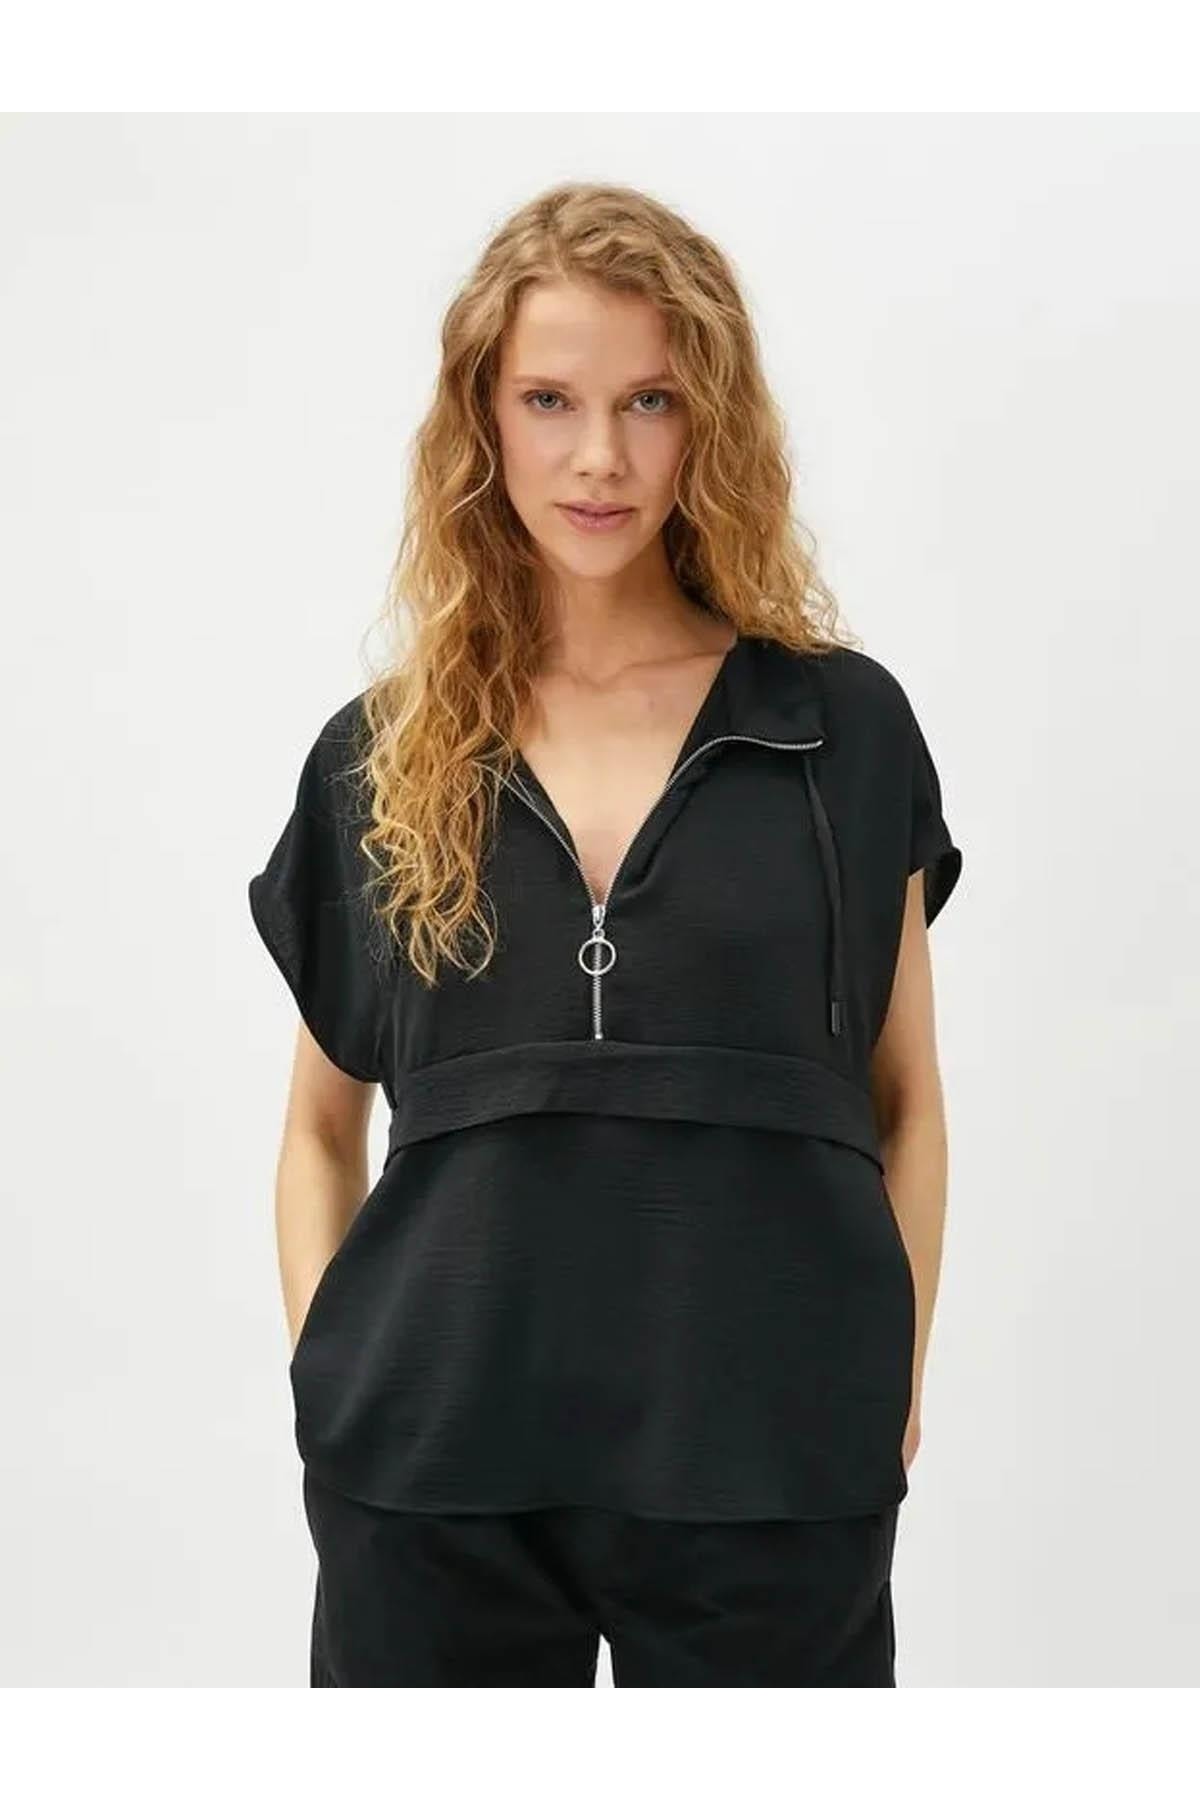 Женская блузка черная Koton, черный